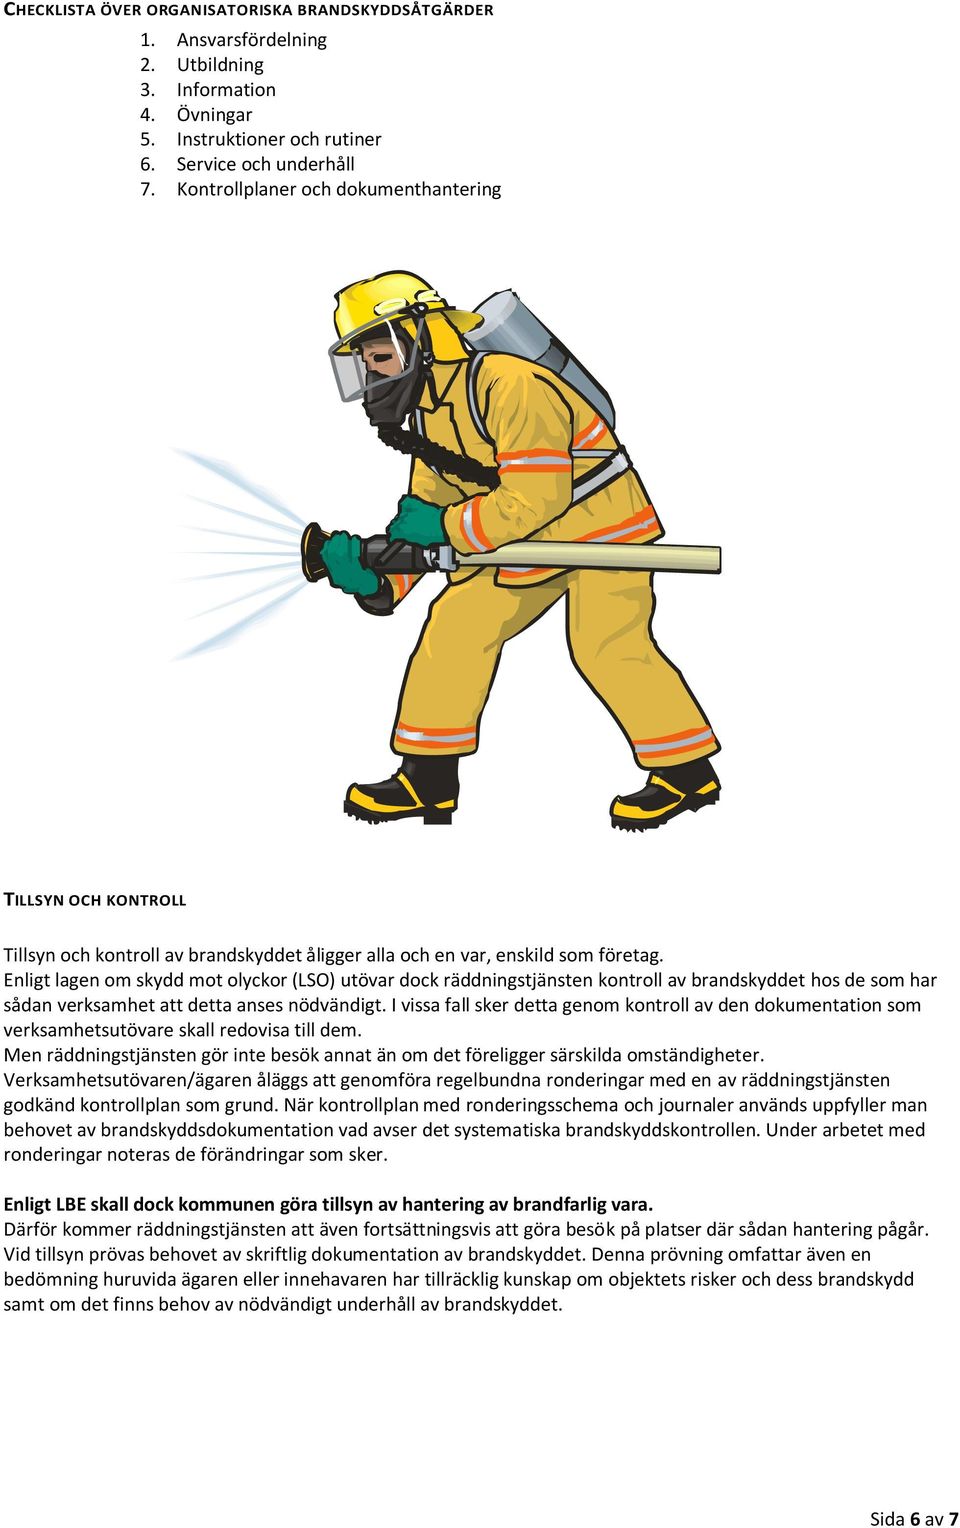 Enligt lagen om skydd mot olyckor (LSO) utövar dock räddningstjänsten kontroll av brandskyddet hos de som har sådan verksamhet att detta anses nödvändigt.